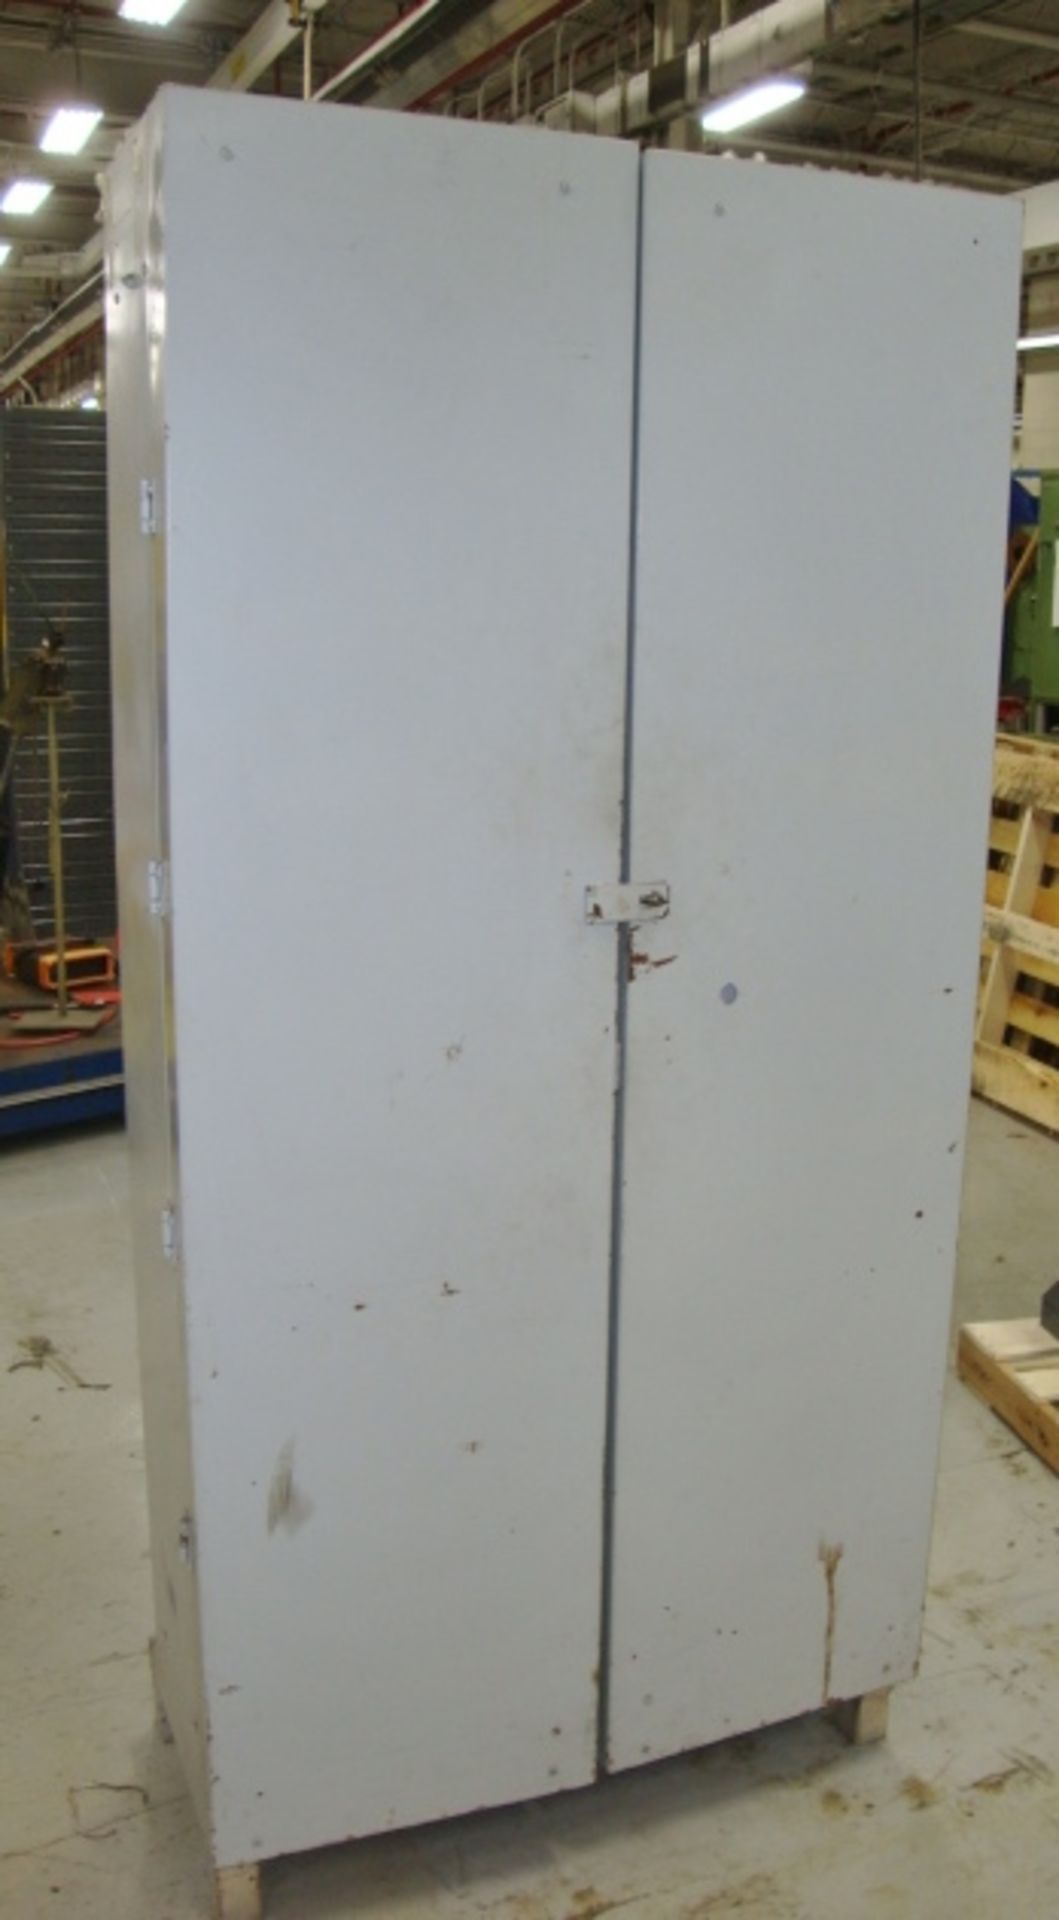 HD Storage Cabinet, approx. 36" x 16" x 78" tall